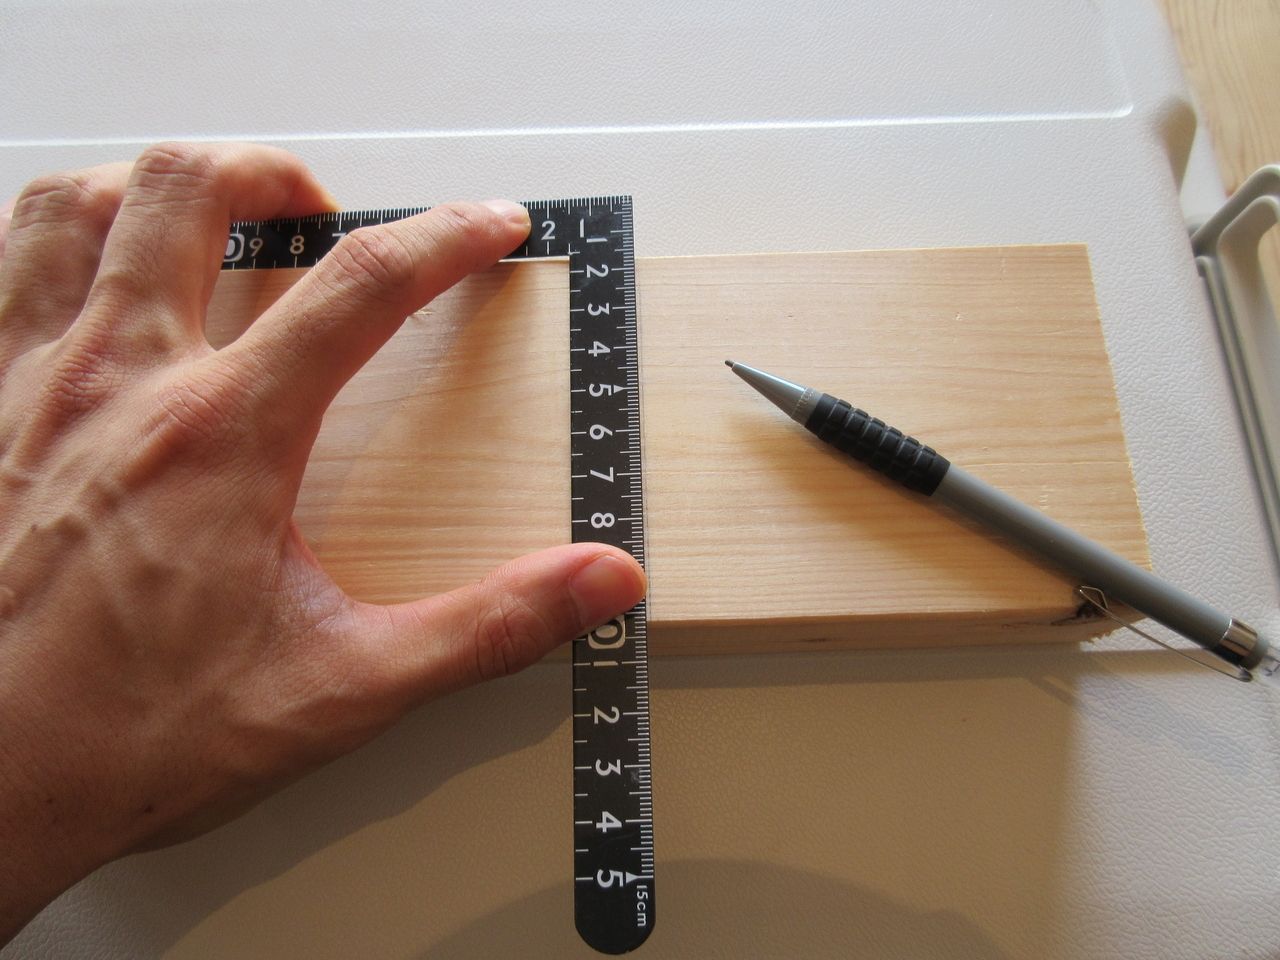 サシガネを使えば木材に対して直角な線を引きます。木材にサシガネを引っ掛けて、鉛筆などで線を引けば完了です。状況にもよりますが、サシガネの長手（長い方）側を木材に当てて、妻手（短い方）側で線を引いた方がより正確な直角の線が引けます。